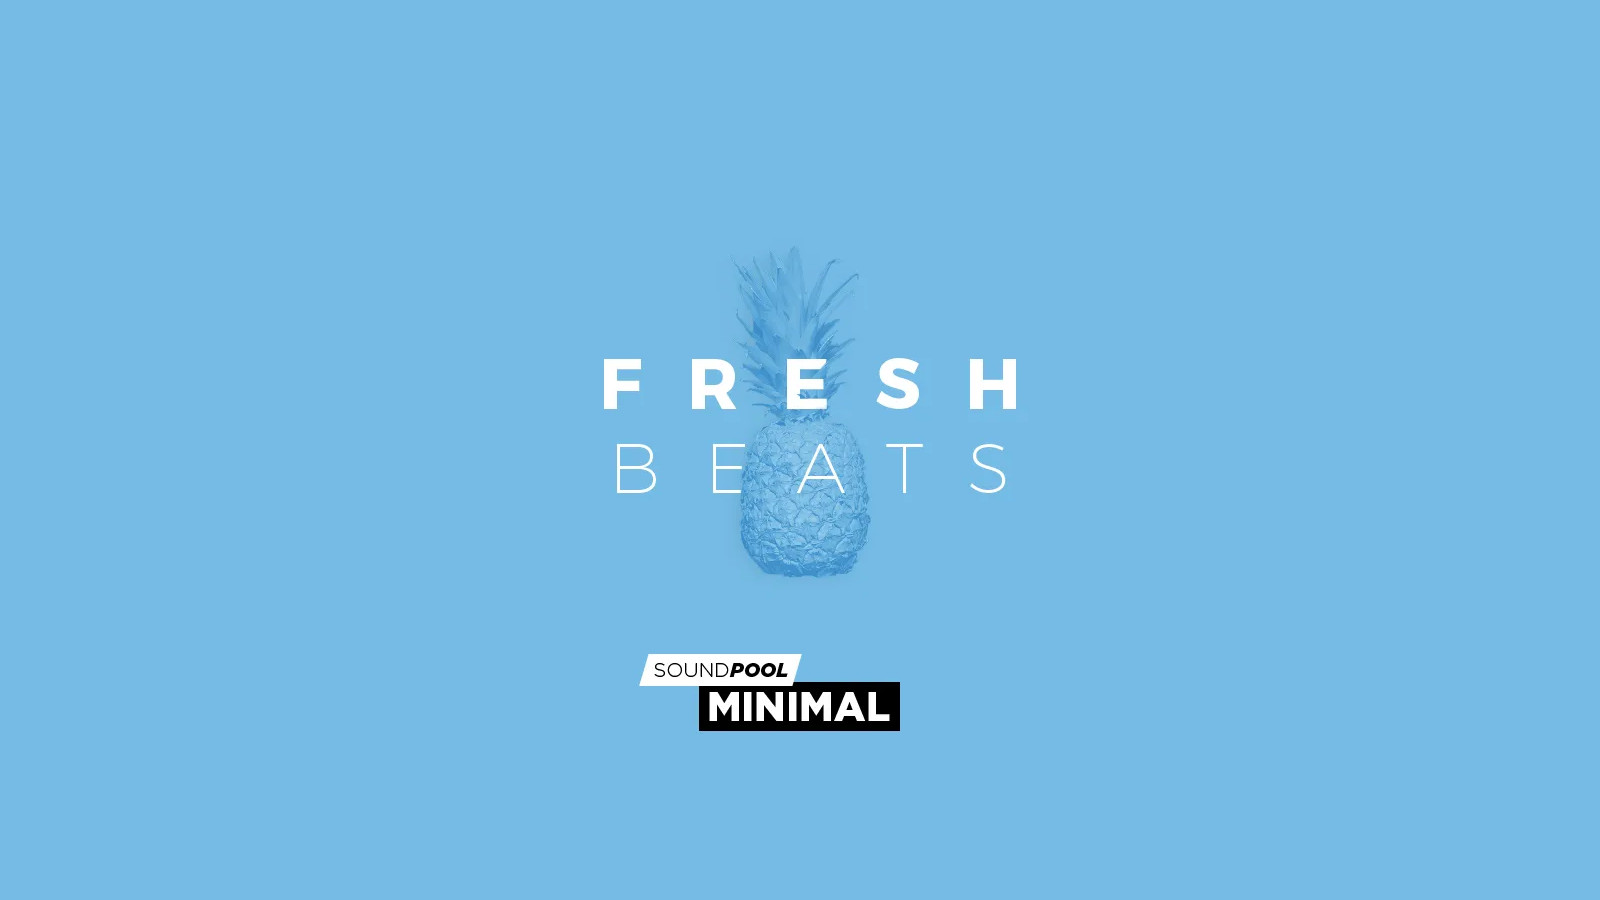 MAGIX Soundpool Fresh Beats ProducerPlanet CD Key, 5.65 usd